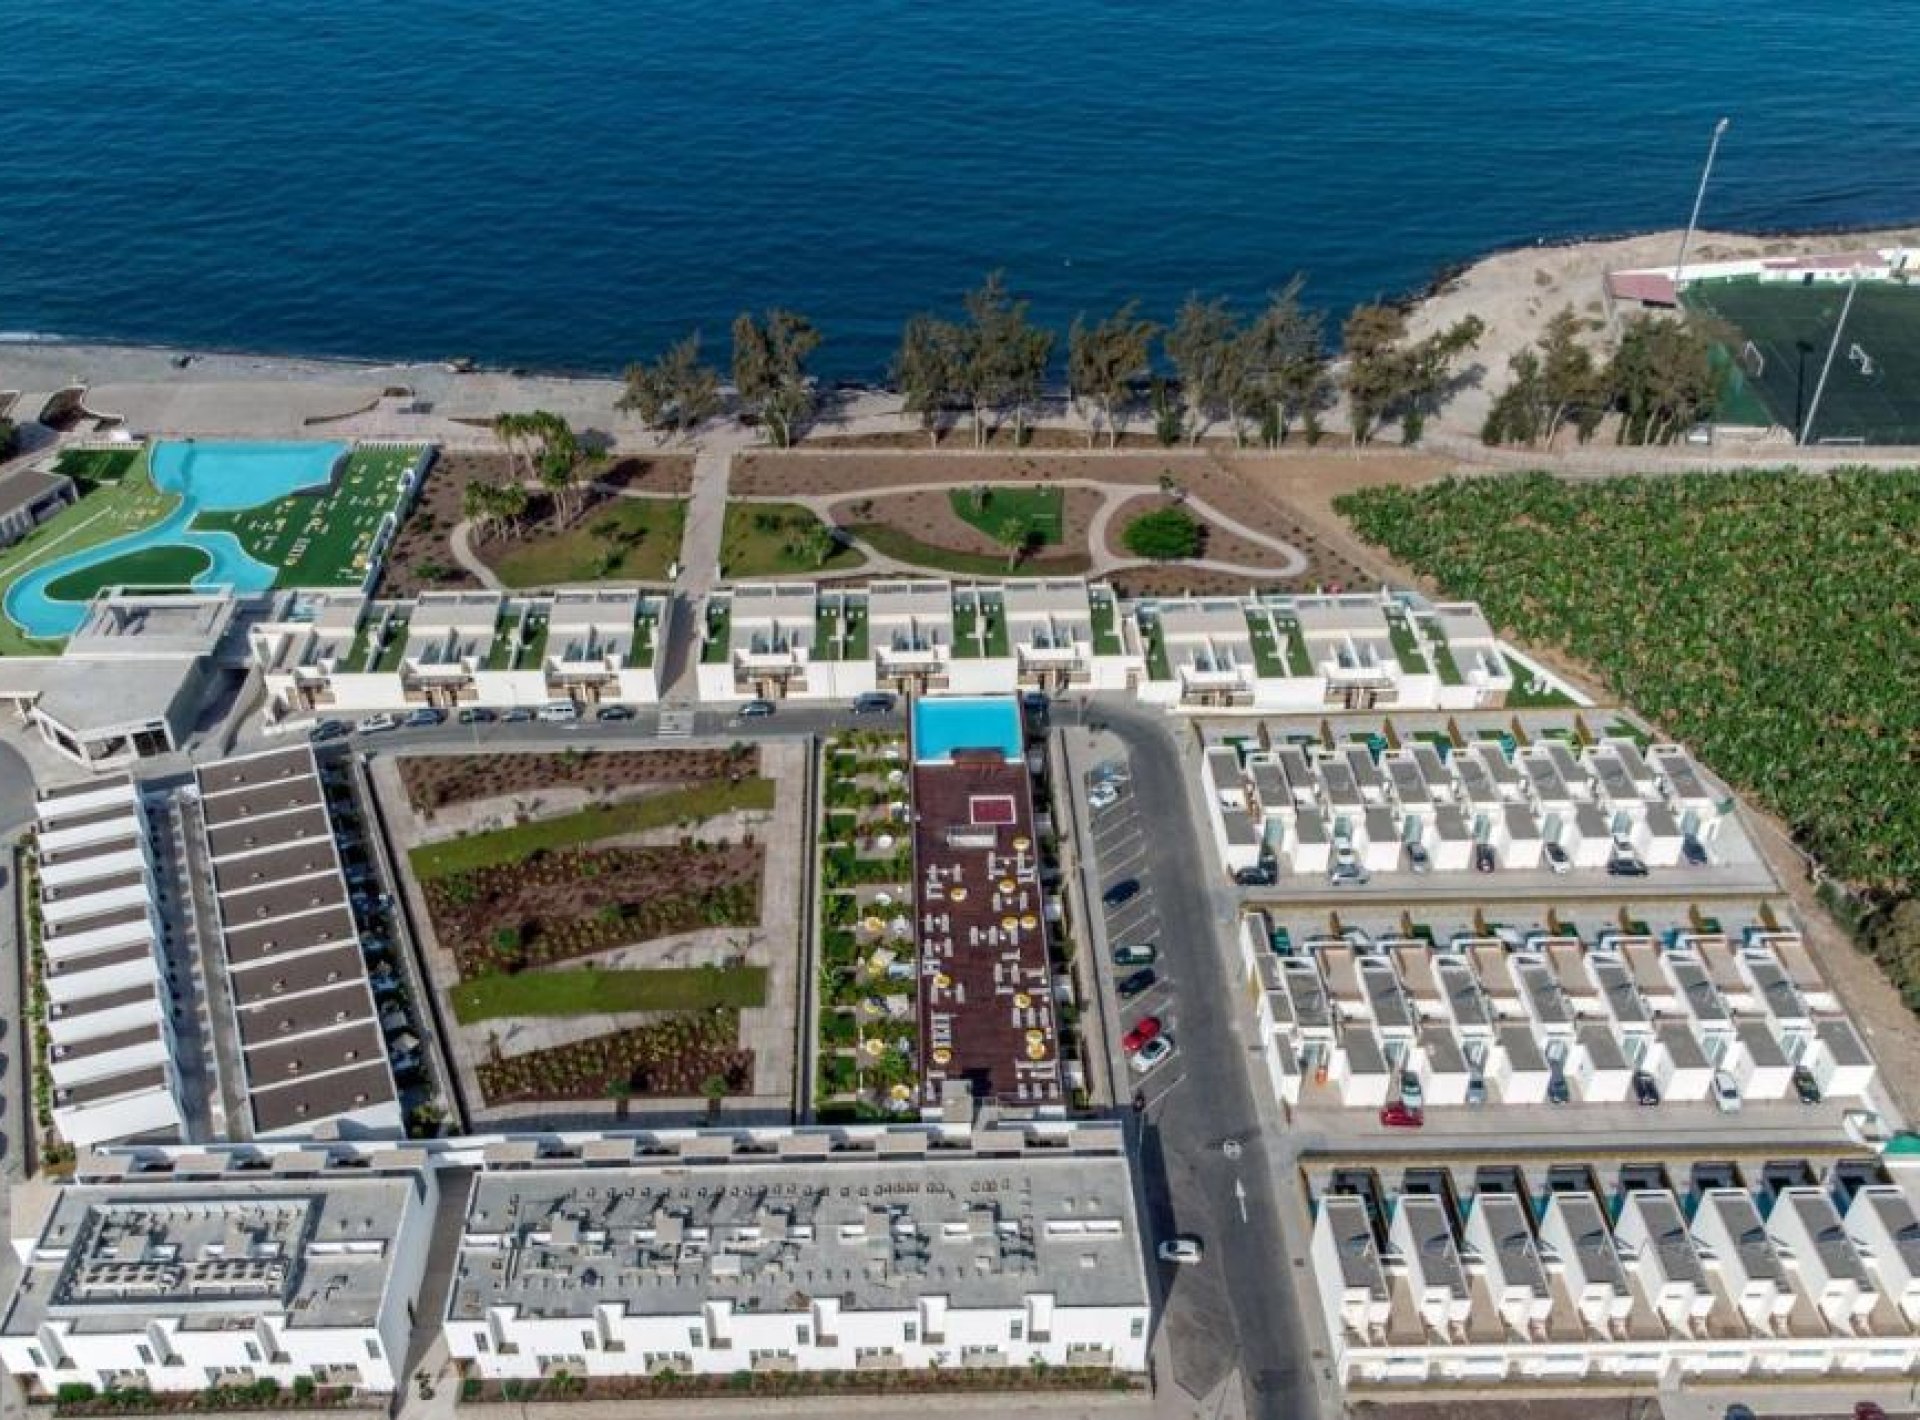 ISholidays Santa Agueda, Casa 3 dormitorios Ocean front, piscina privada frente al océano ad2